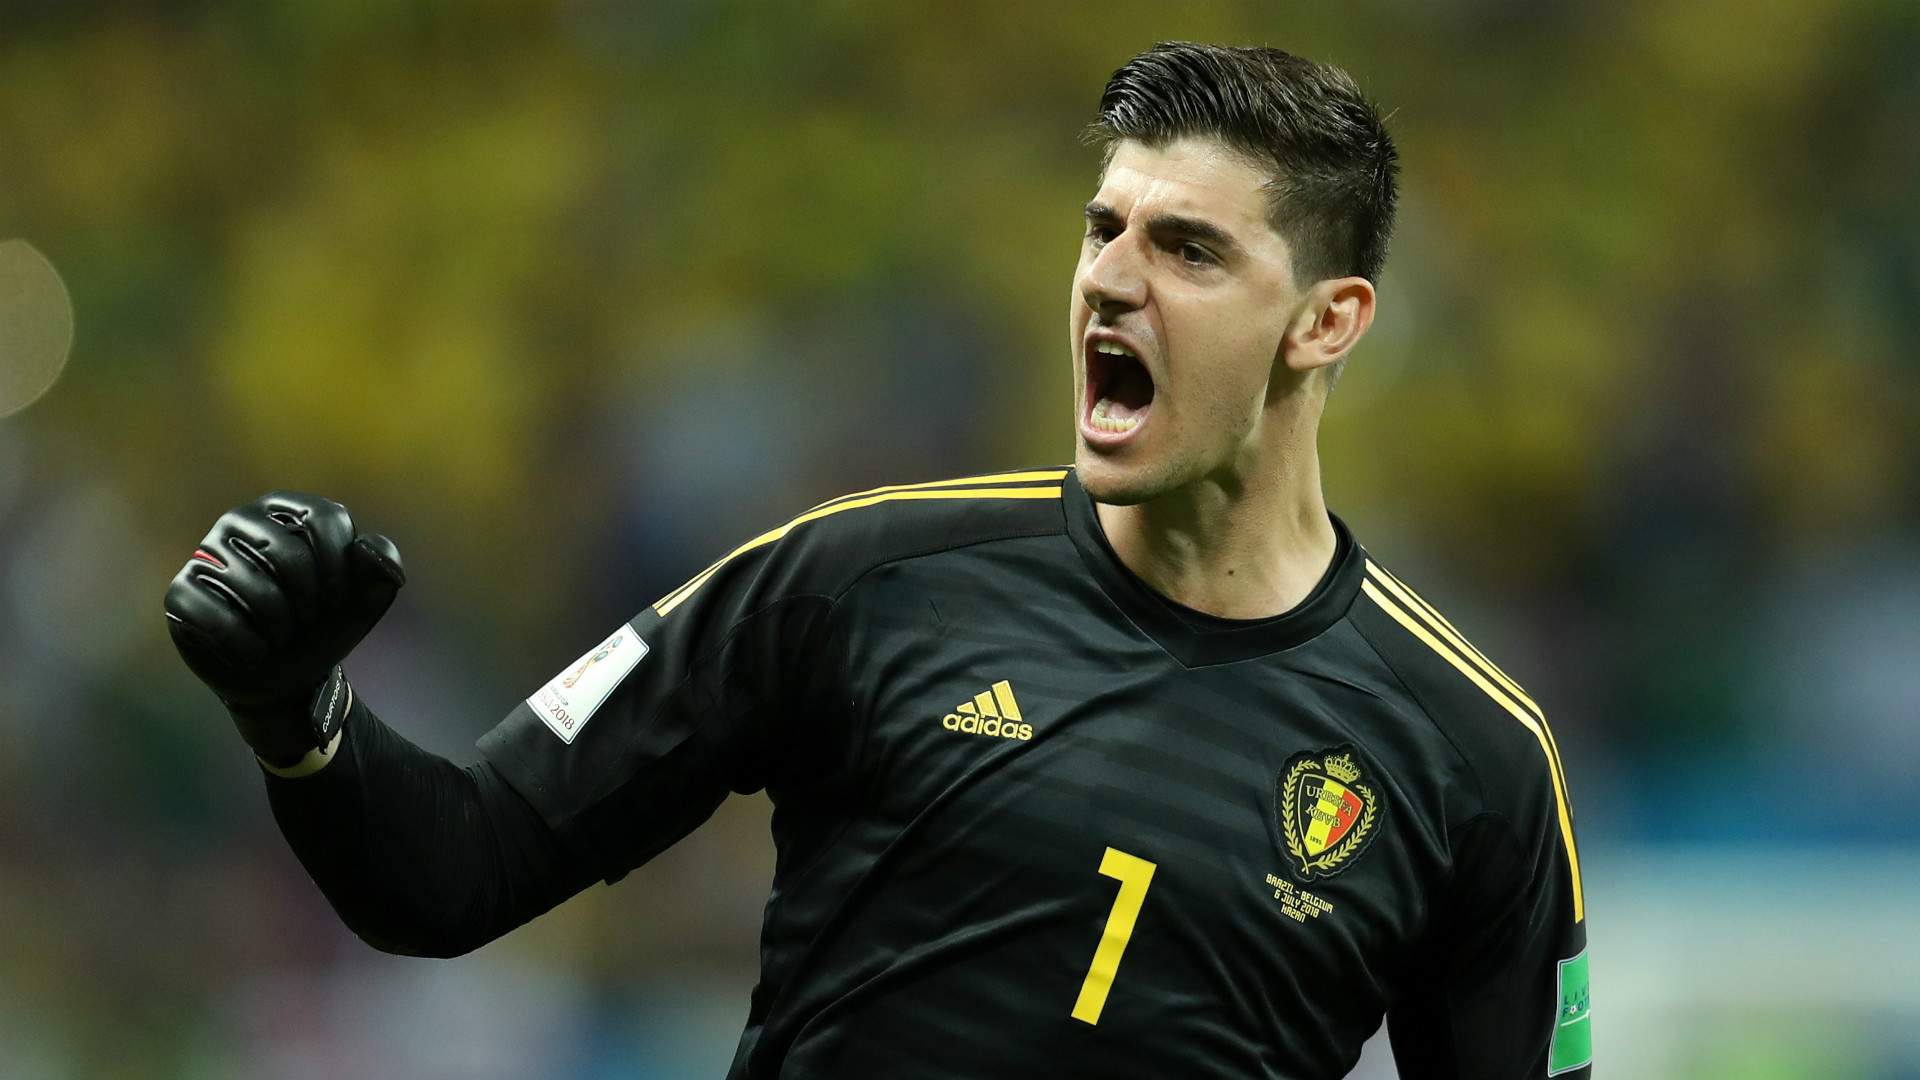 El guardameta belga, Thibaut Courtois, principal amenaza ante España en octavos / Goal